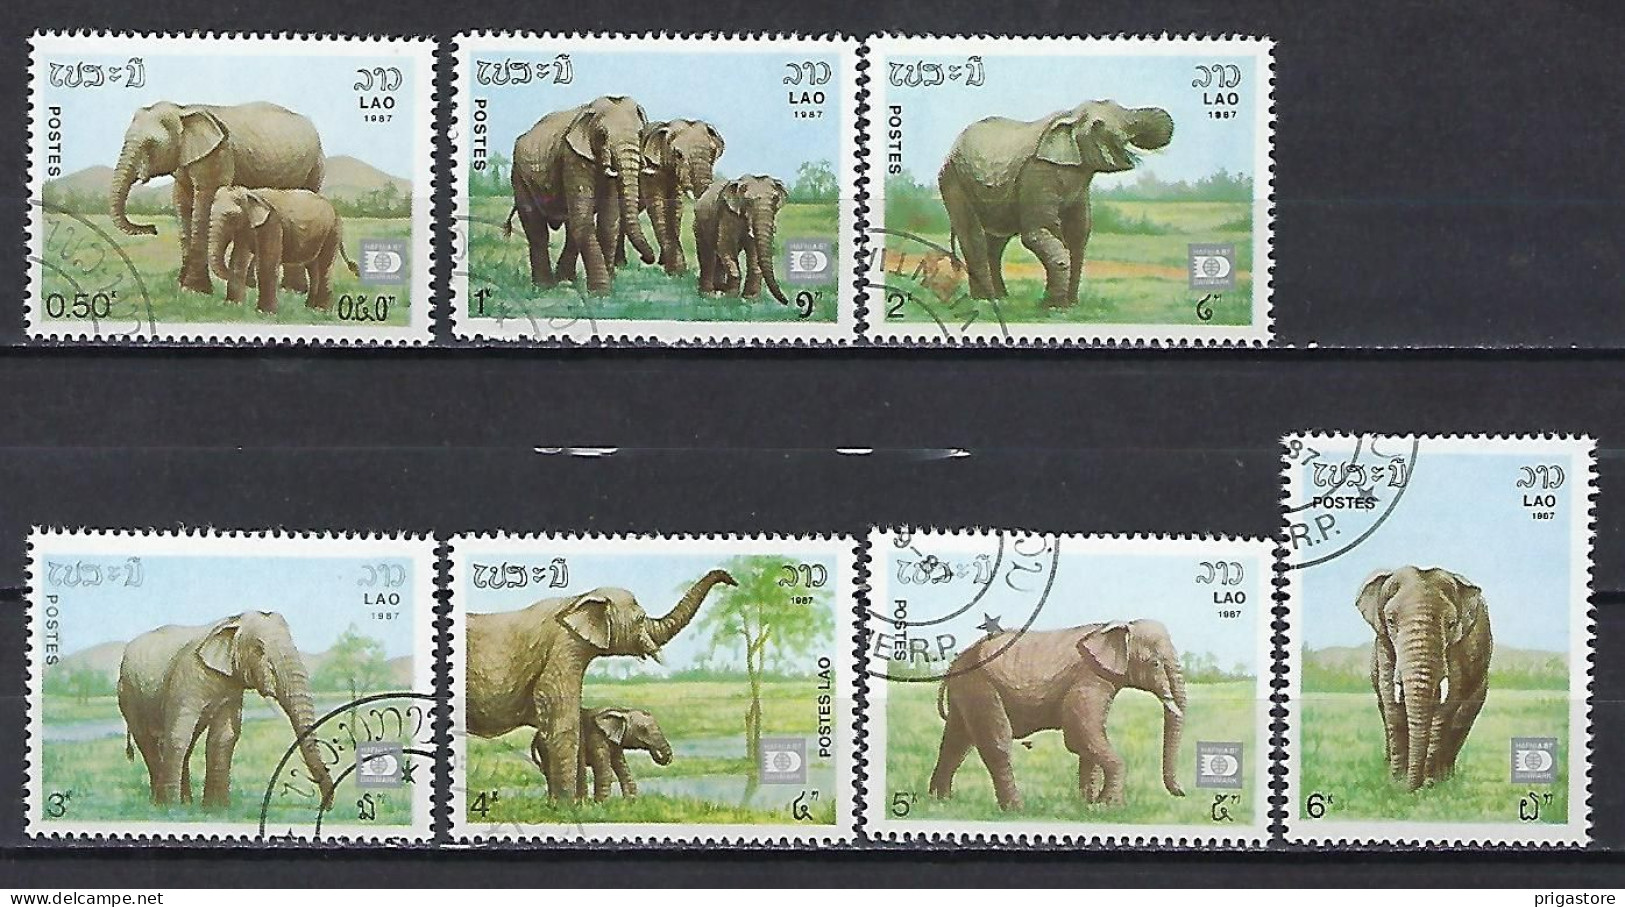 Eléphants Laos 1987 (605) Yvert 791 à 797 Oblitérés Used - Olifanten